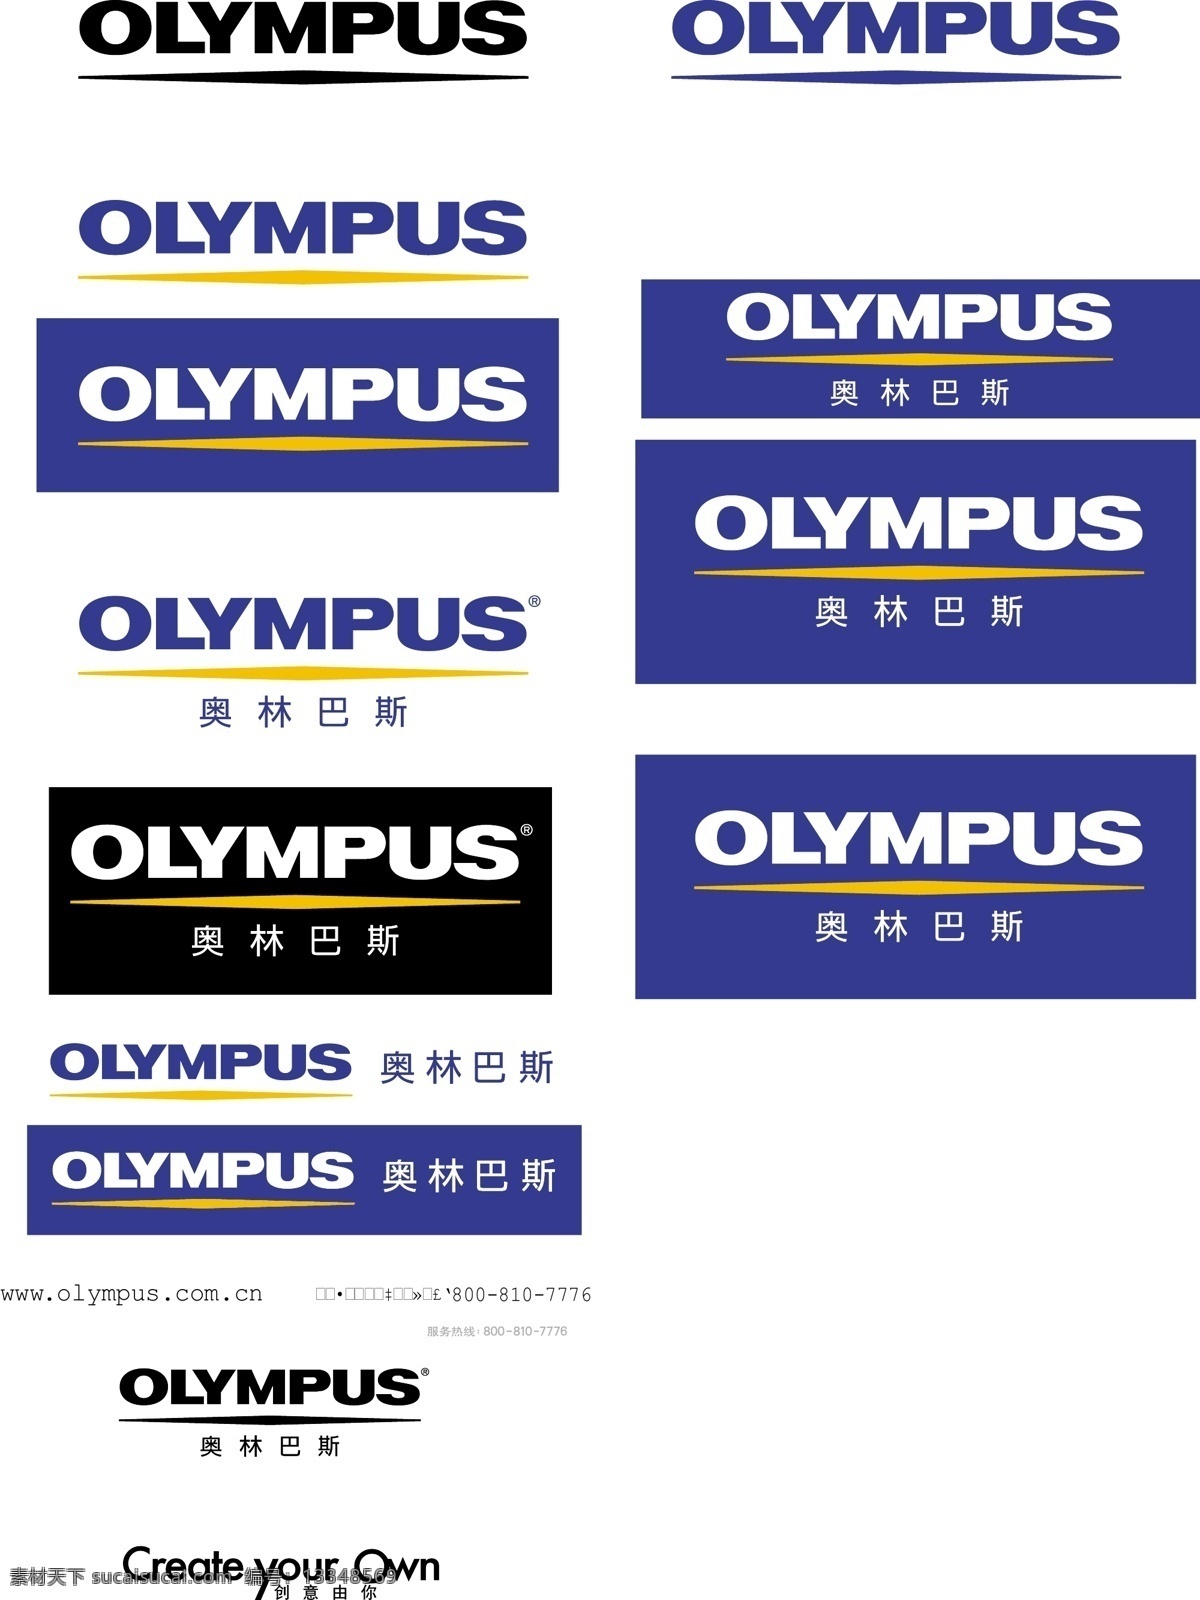 奥林巴斯 logo 全 olympus 标识标志图标 企业 标志 矢量图库